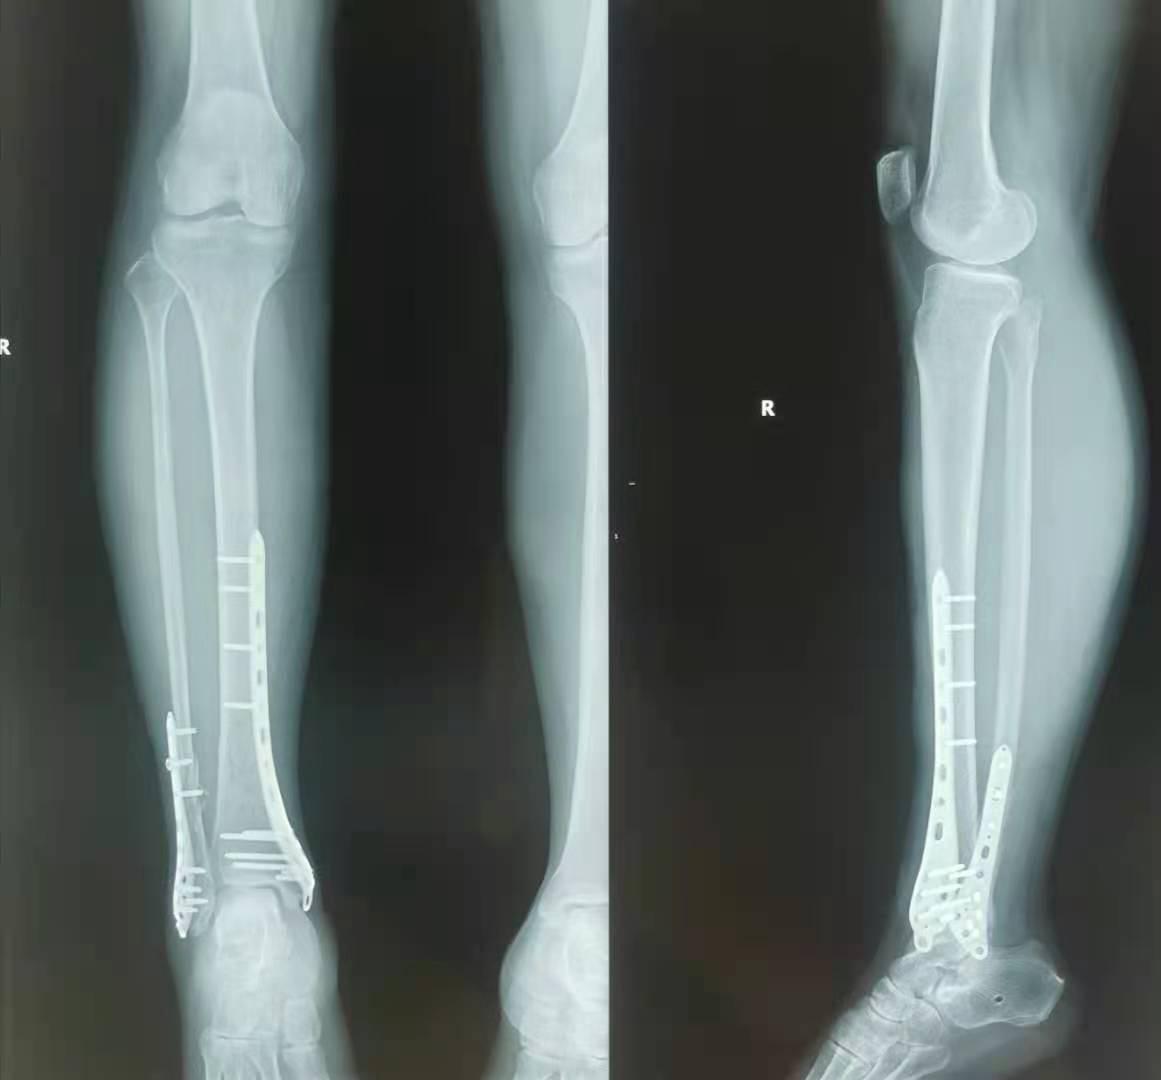 踝关节骨折病例 - 骨科专业讨论版 -丁香园论坛